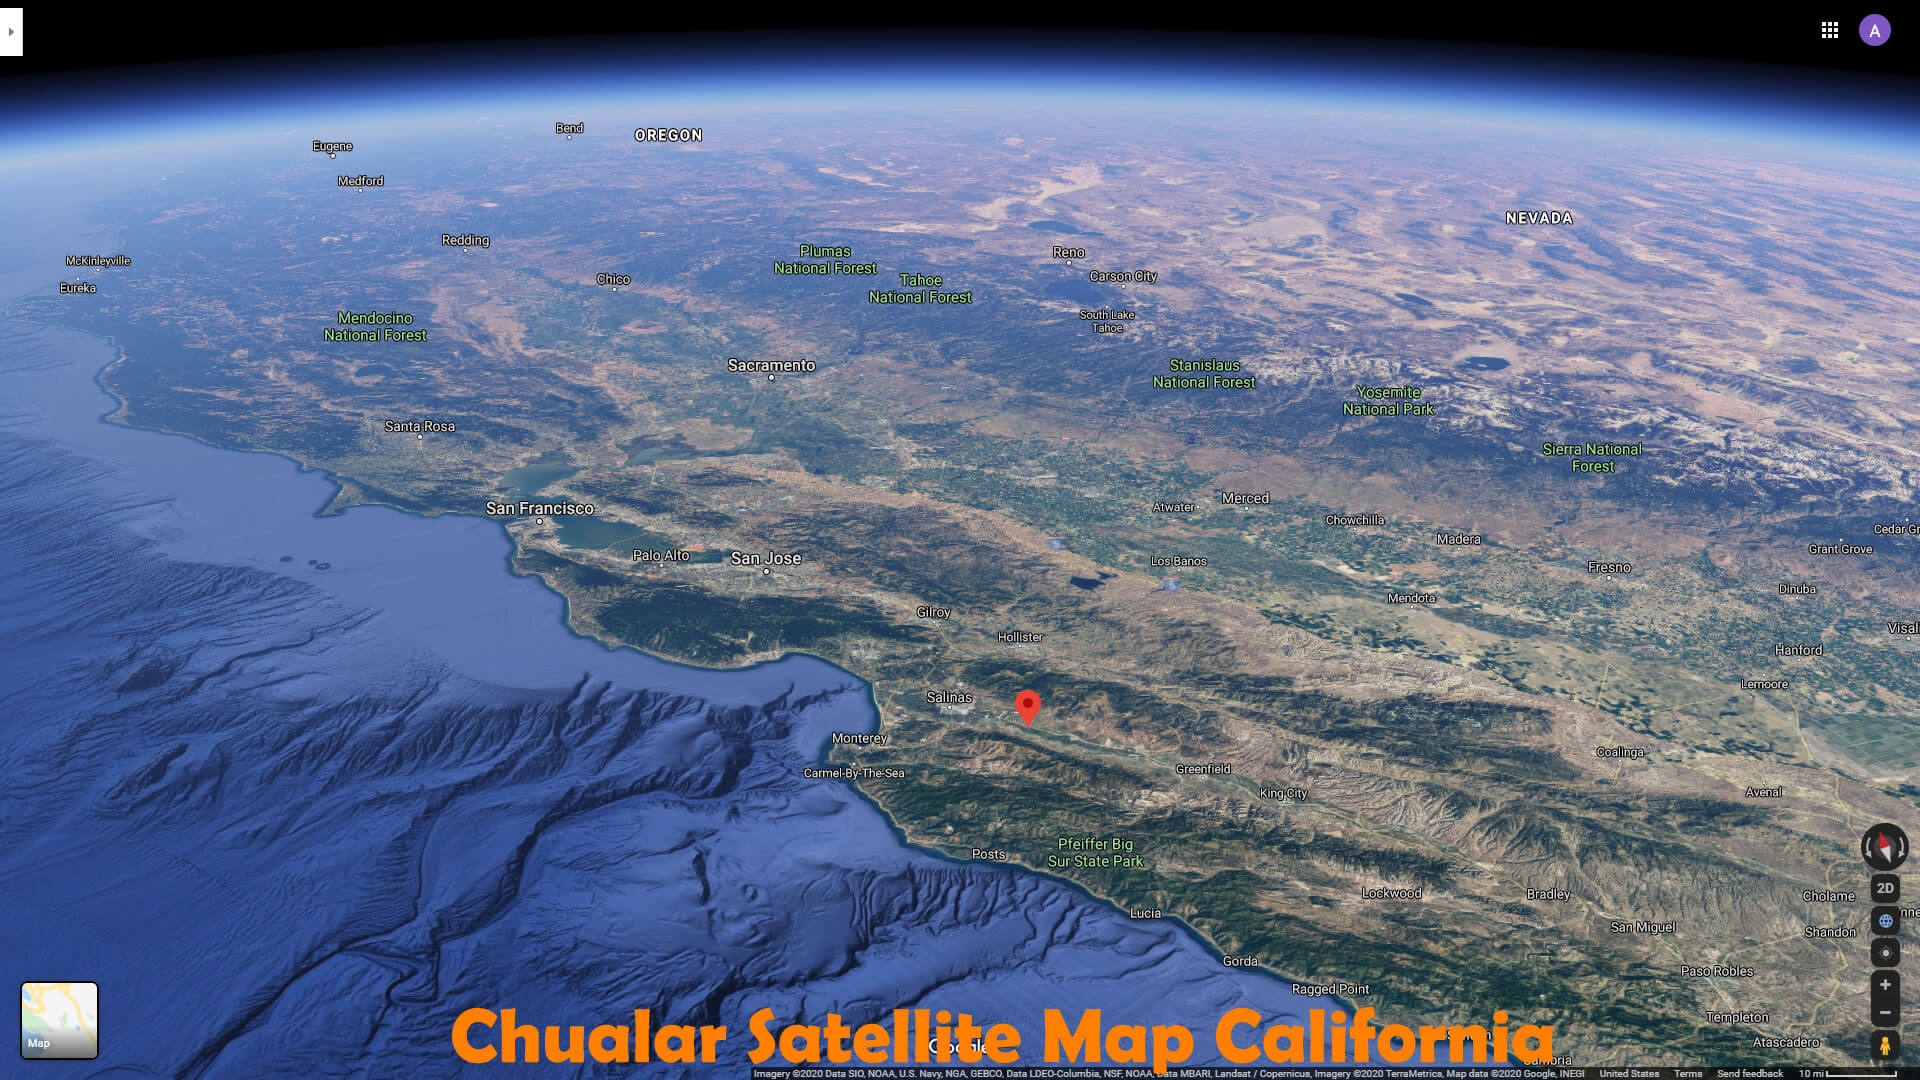 Chualar Satellite Carte californie